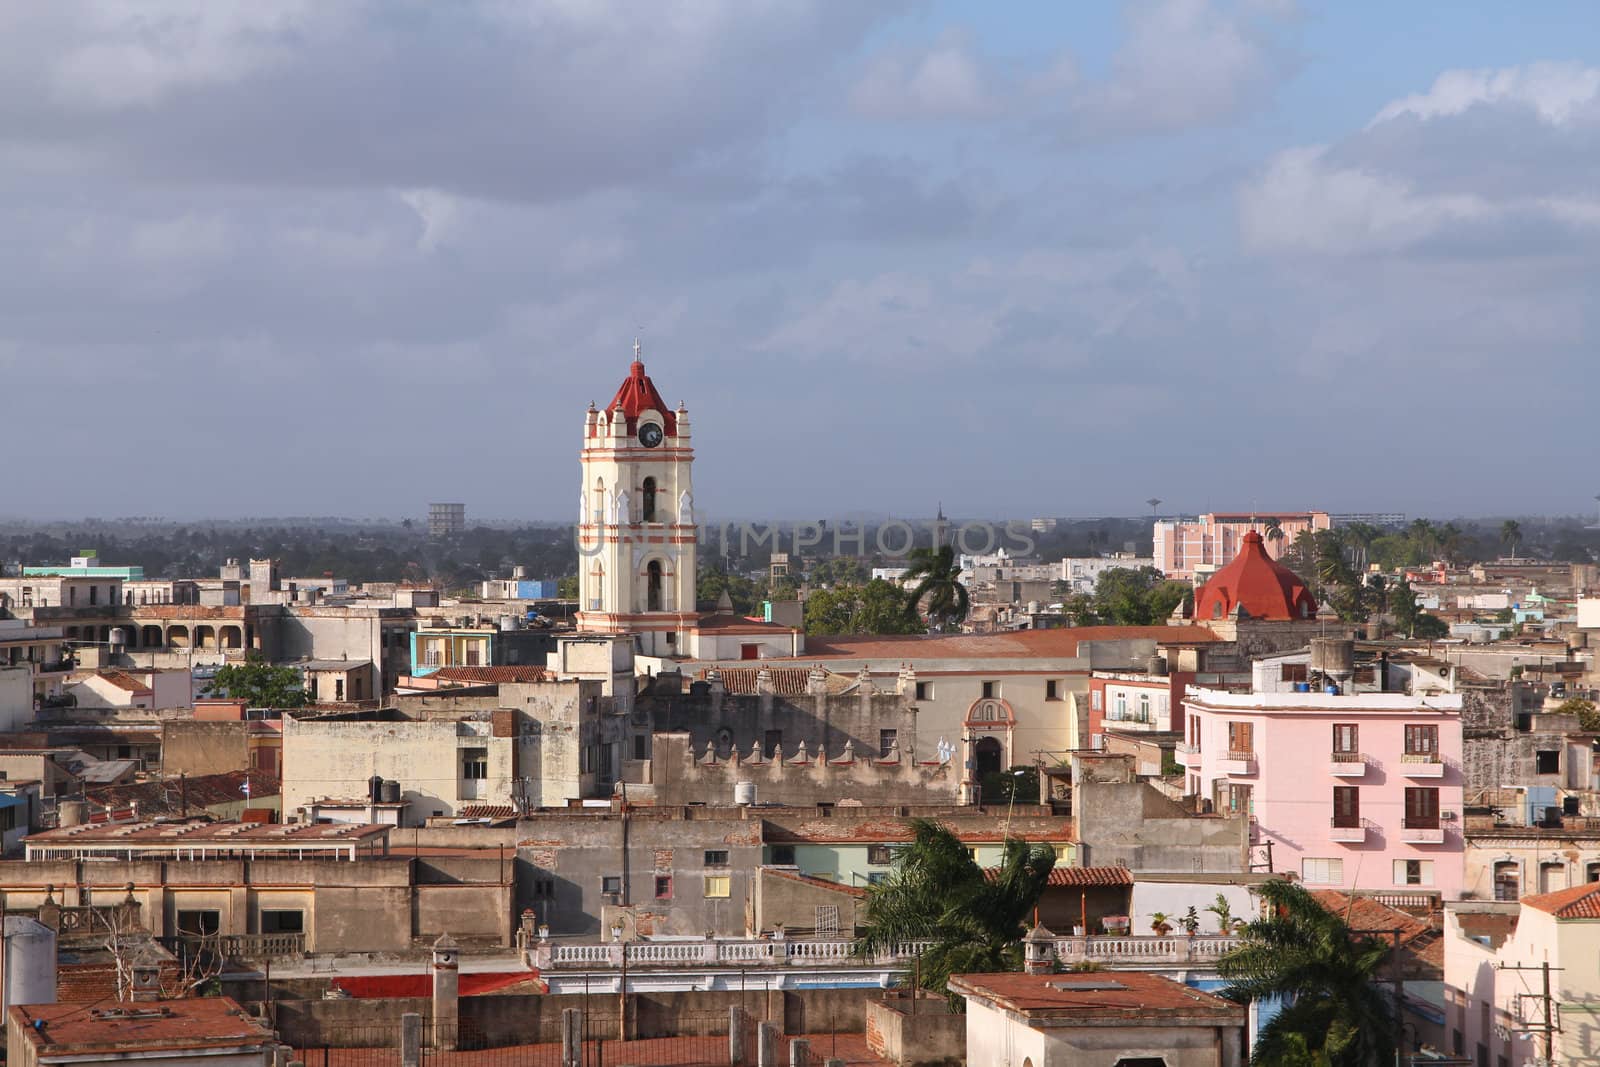 Cuba by tupungato